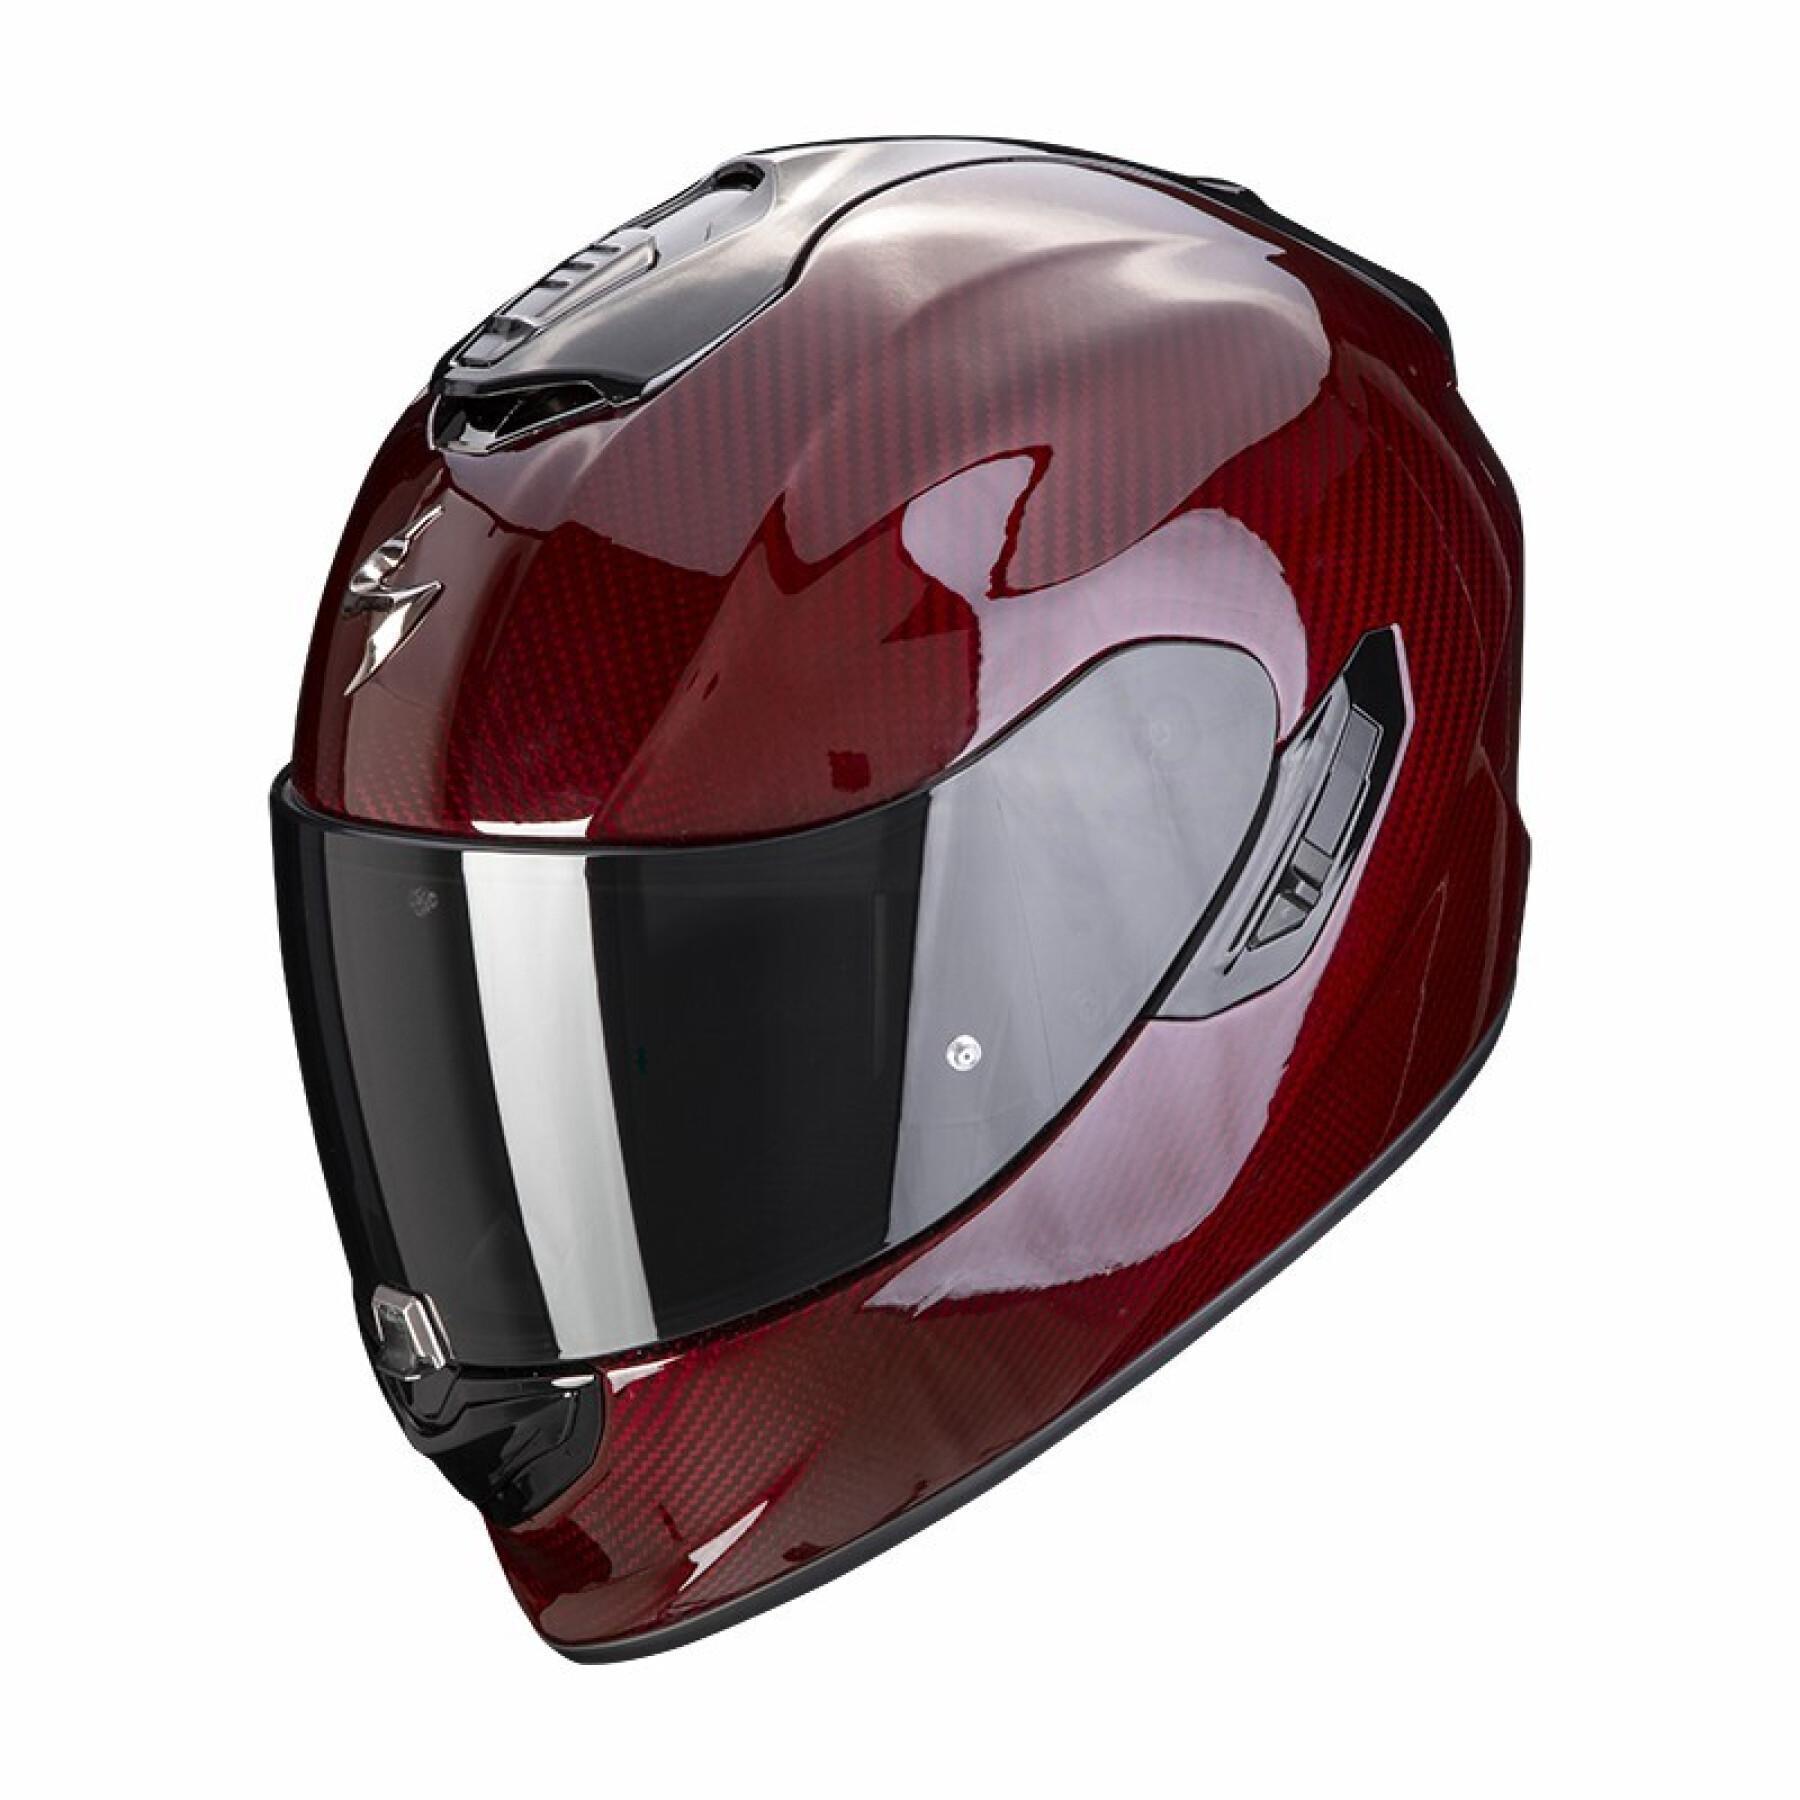 Helhjälm för motorcykel Scorpion Exo-1400 Evo Carbon Air Solid ECE 22-06